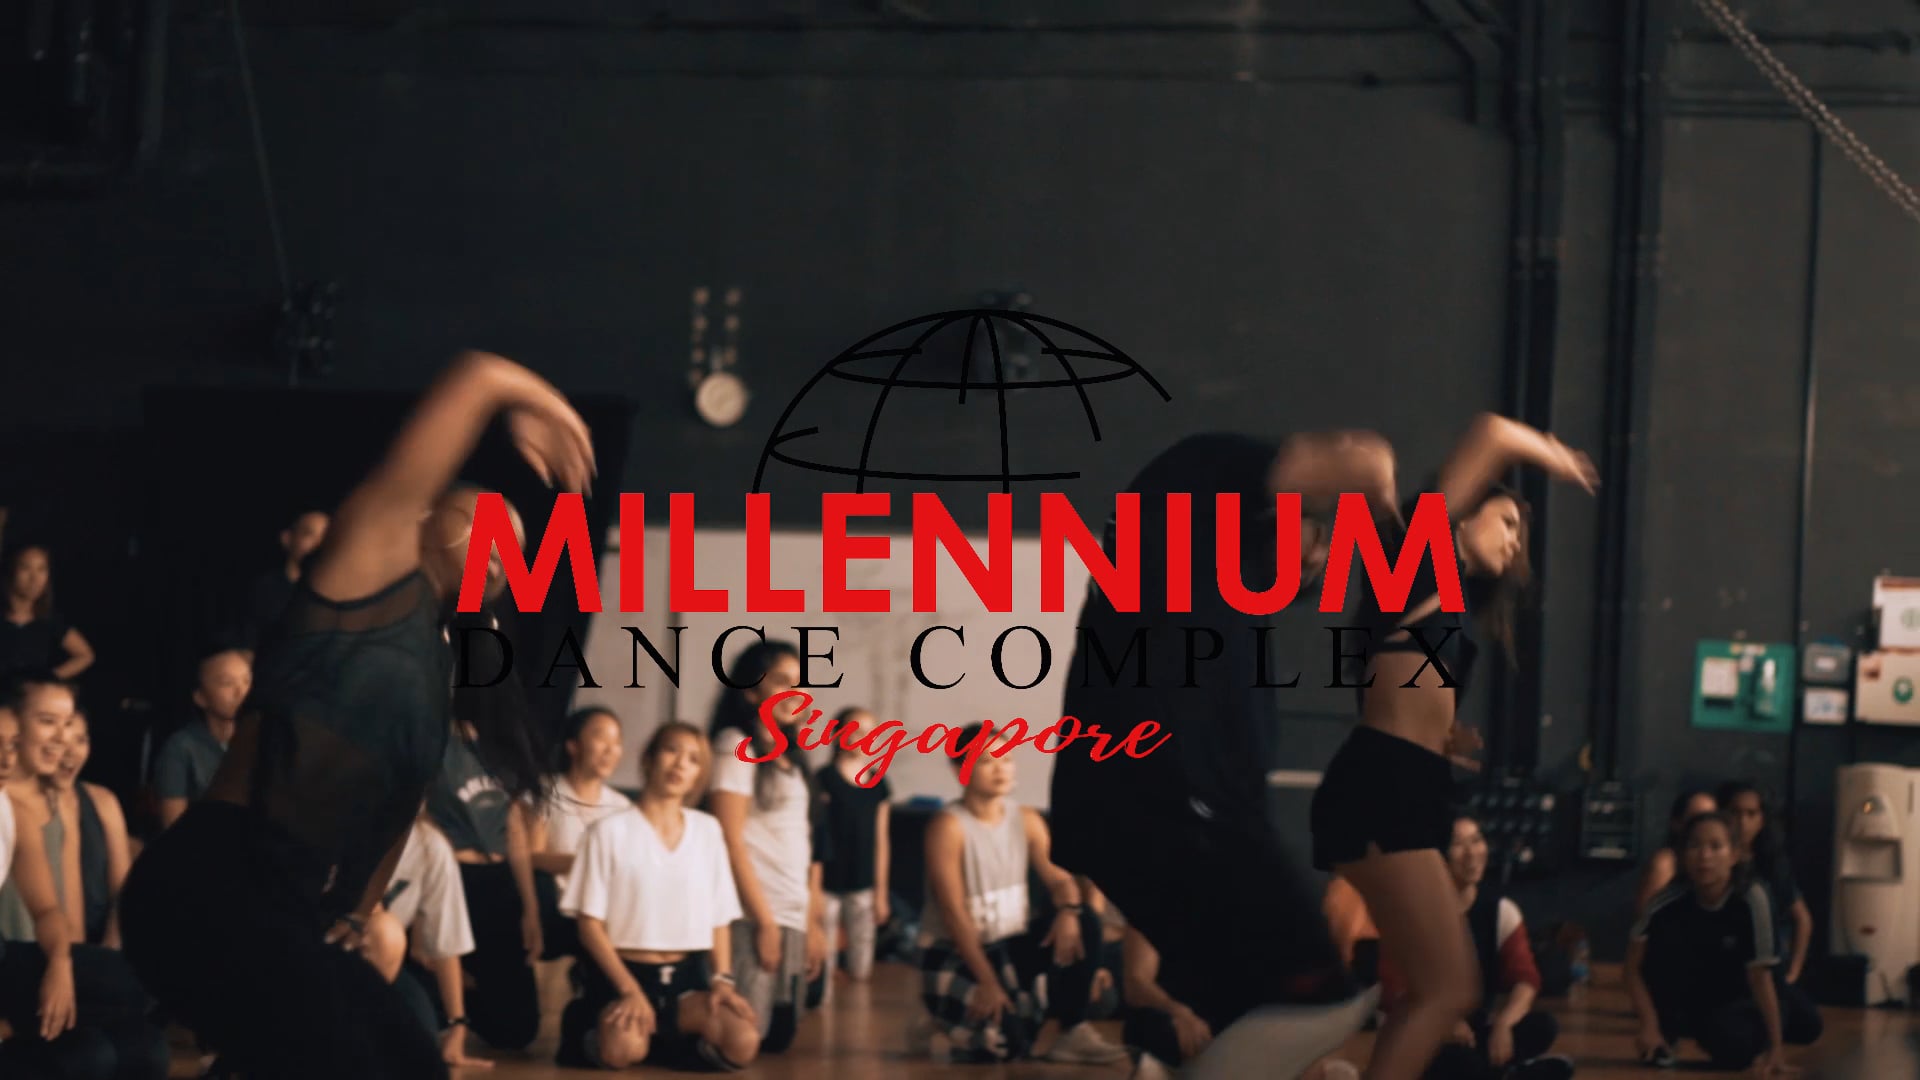 MILLENNIUM DANCE CO SG